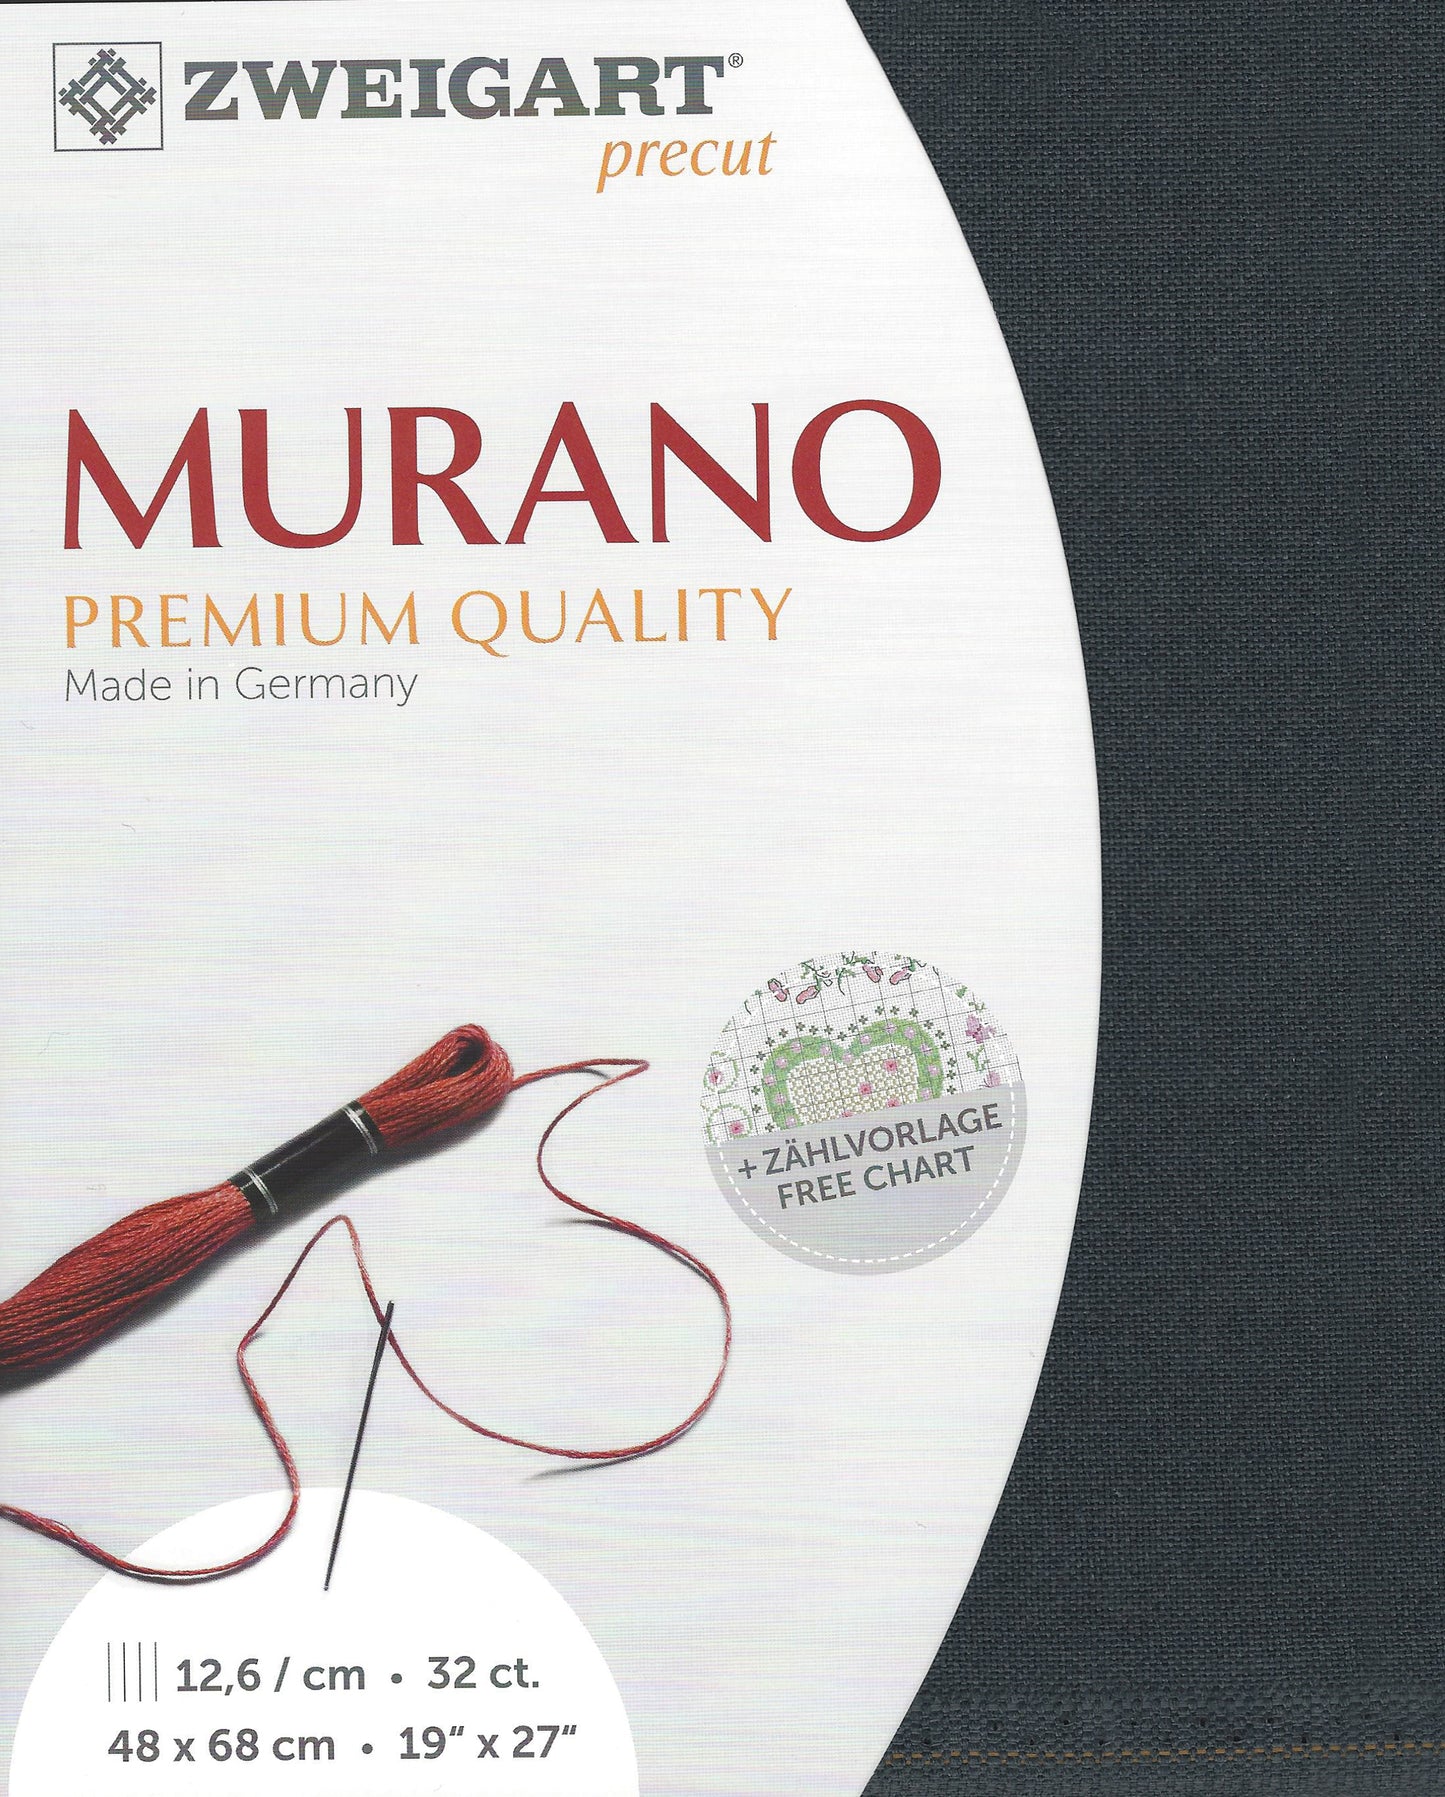 Zweigart 32Ct Murano Slate/Charcoal Grey Pre- cut